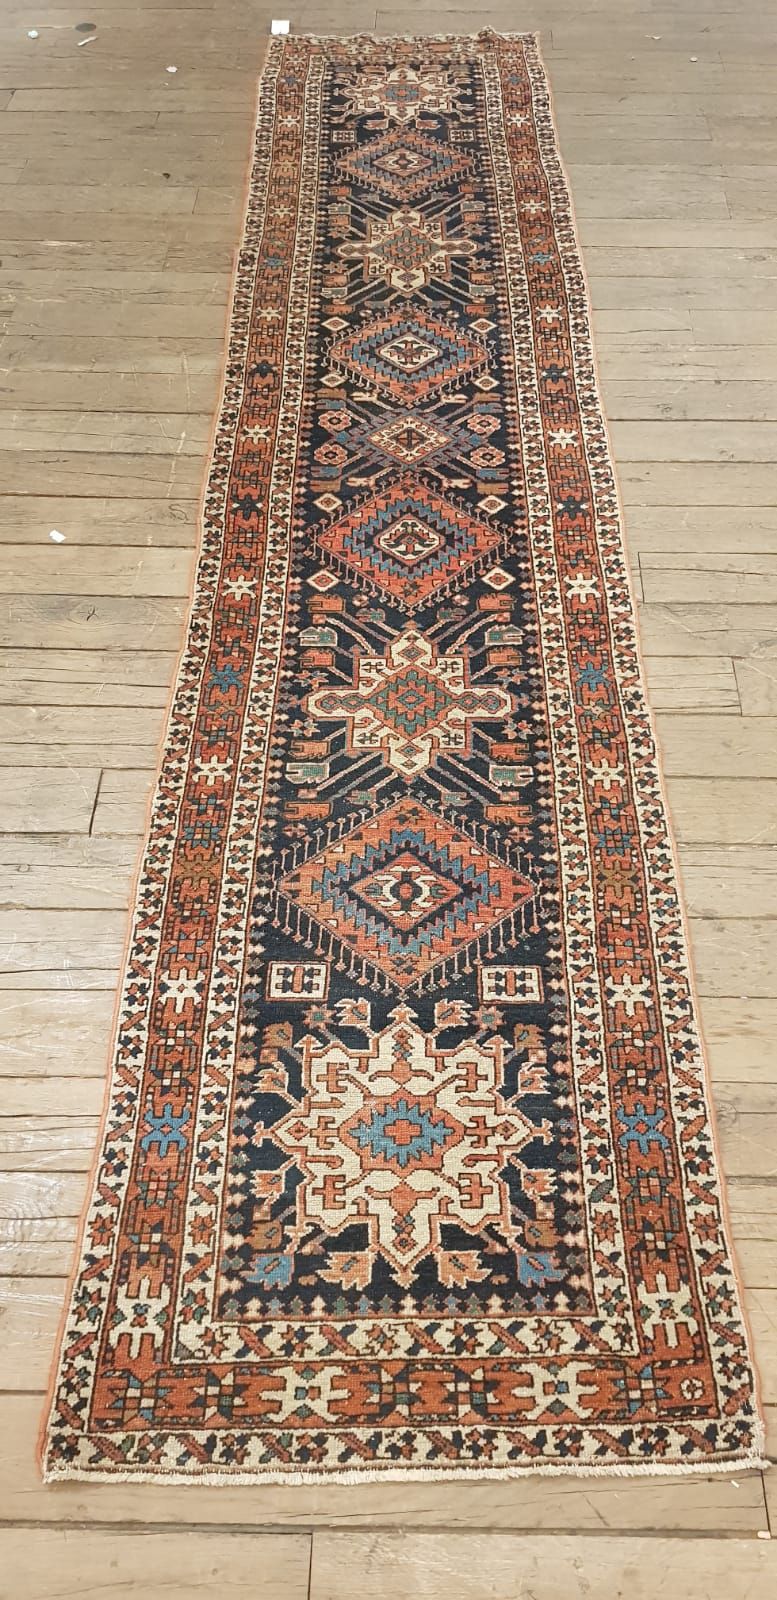 Null 大型画廊地毯

东梅拉耶（伊朗），20世纪中期

羊毛天鹅绒配以棉布衬底，装饰让人联想到高加索的地毯。午夜蓝色的场地上装饰着老鹰和几何风格的多色狼蛛形&hellip;